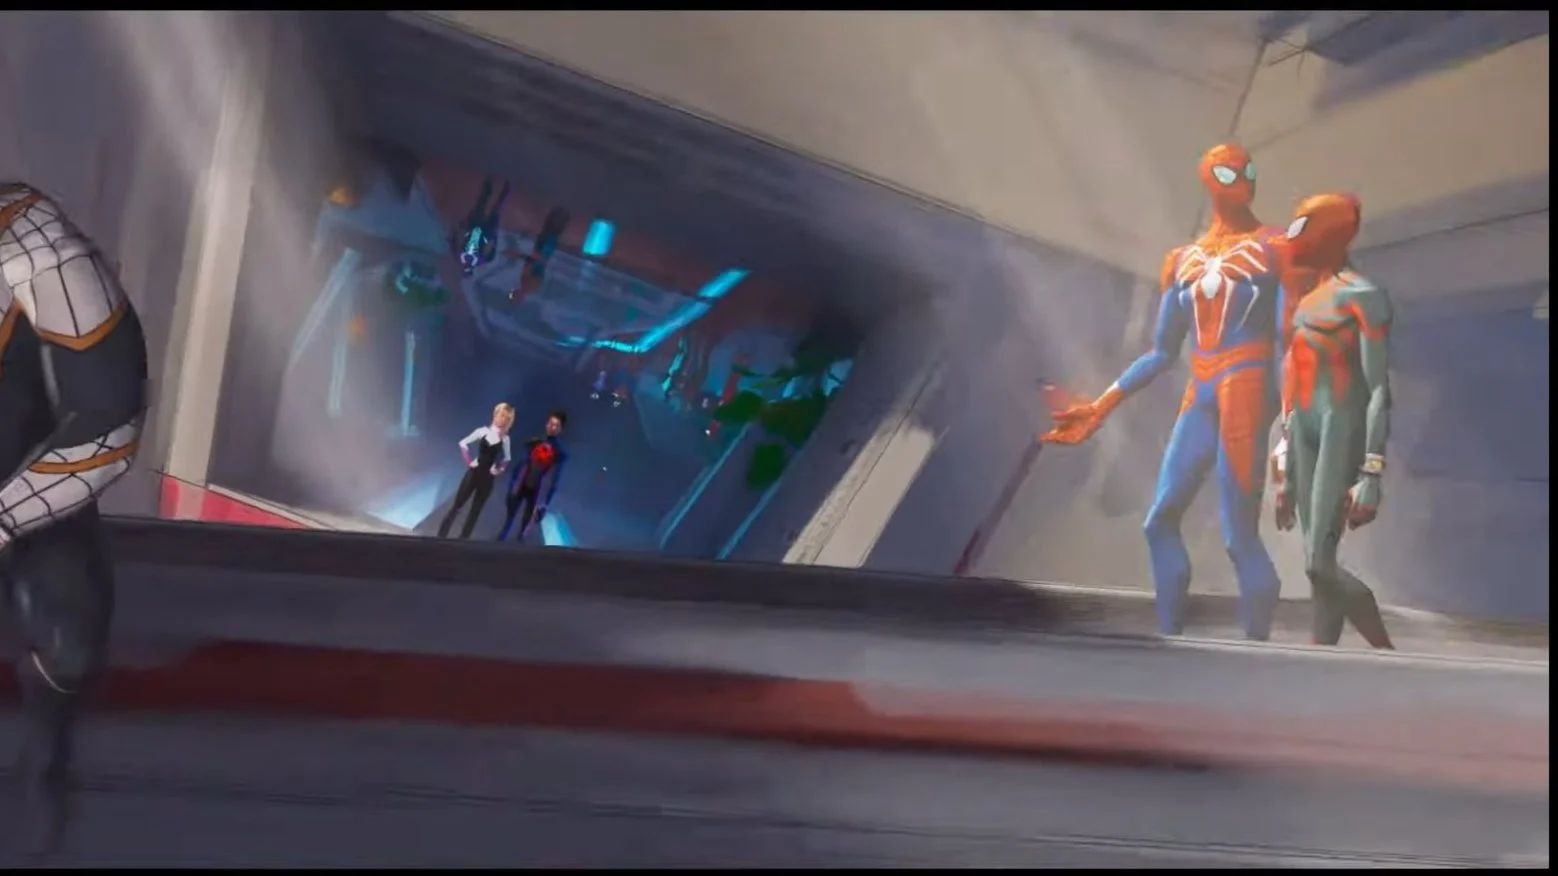 Кадр из трейлера «Человек-паук: Через вселенные 2» с видеоигровым Человеком-пауком